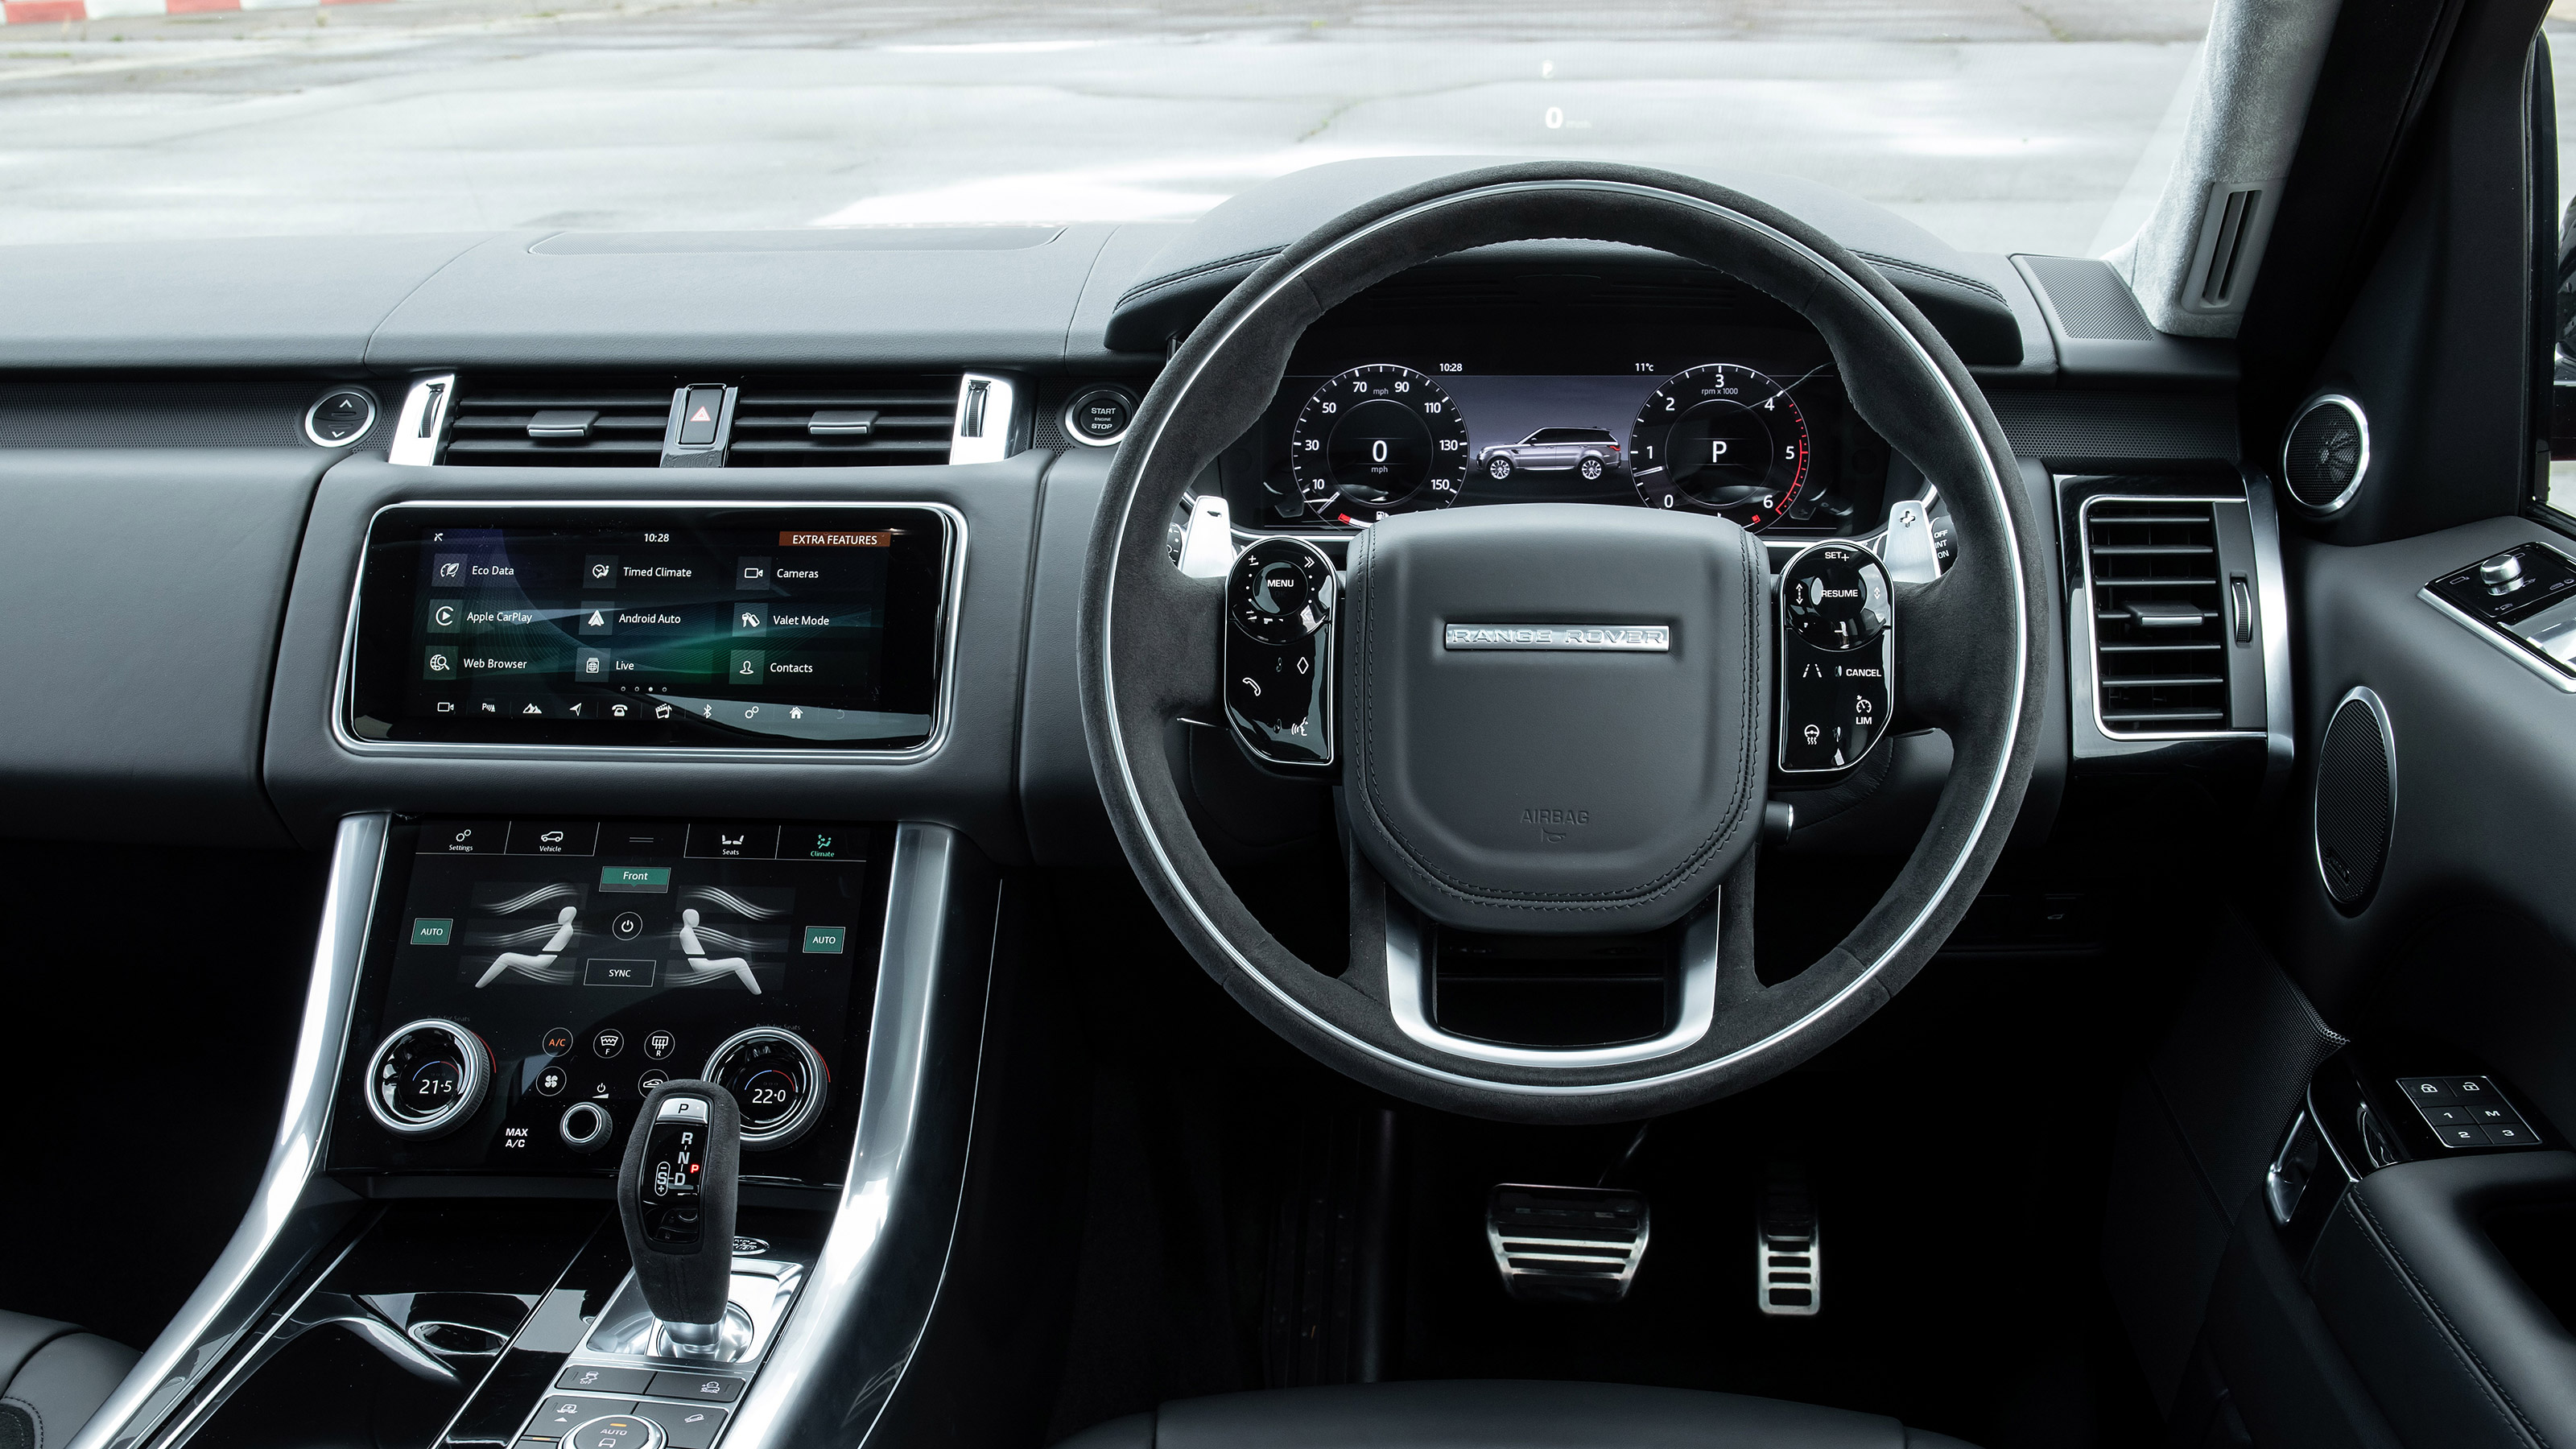 Range Rover Sport interior and tech | evo